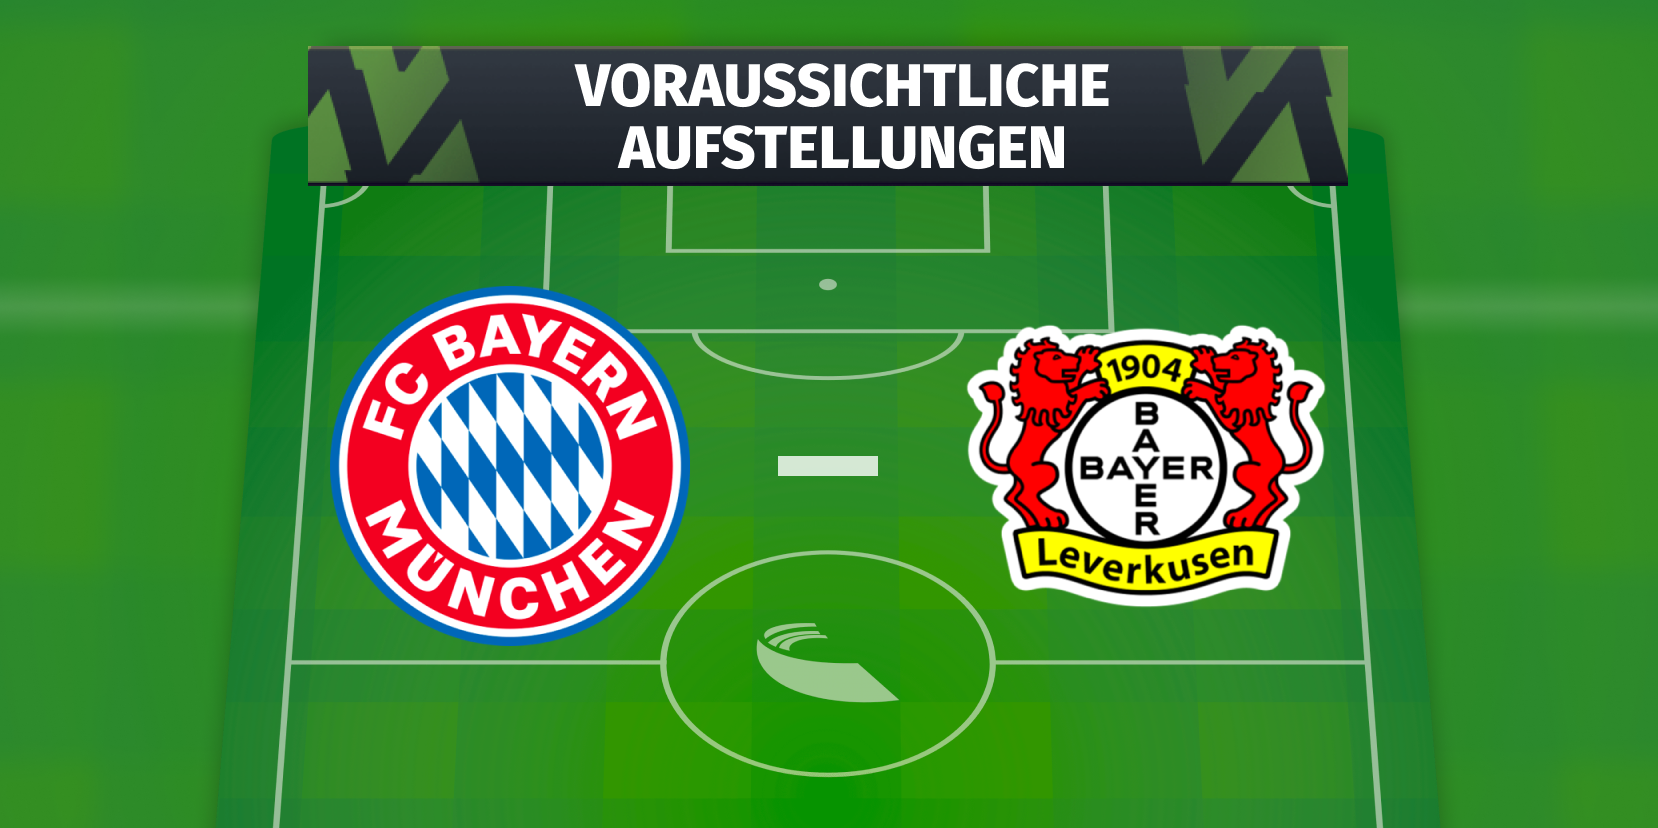 FC Bayern München - Bayer Leverkusen Die voraussichtlichen Aufstellungen